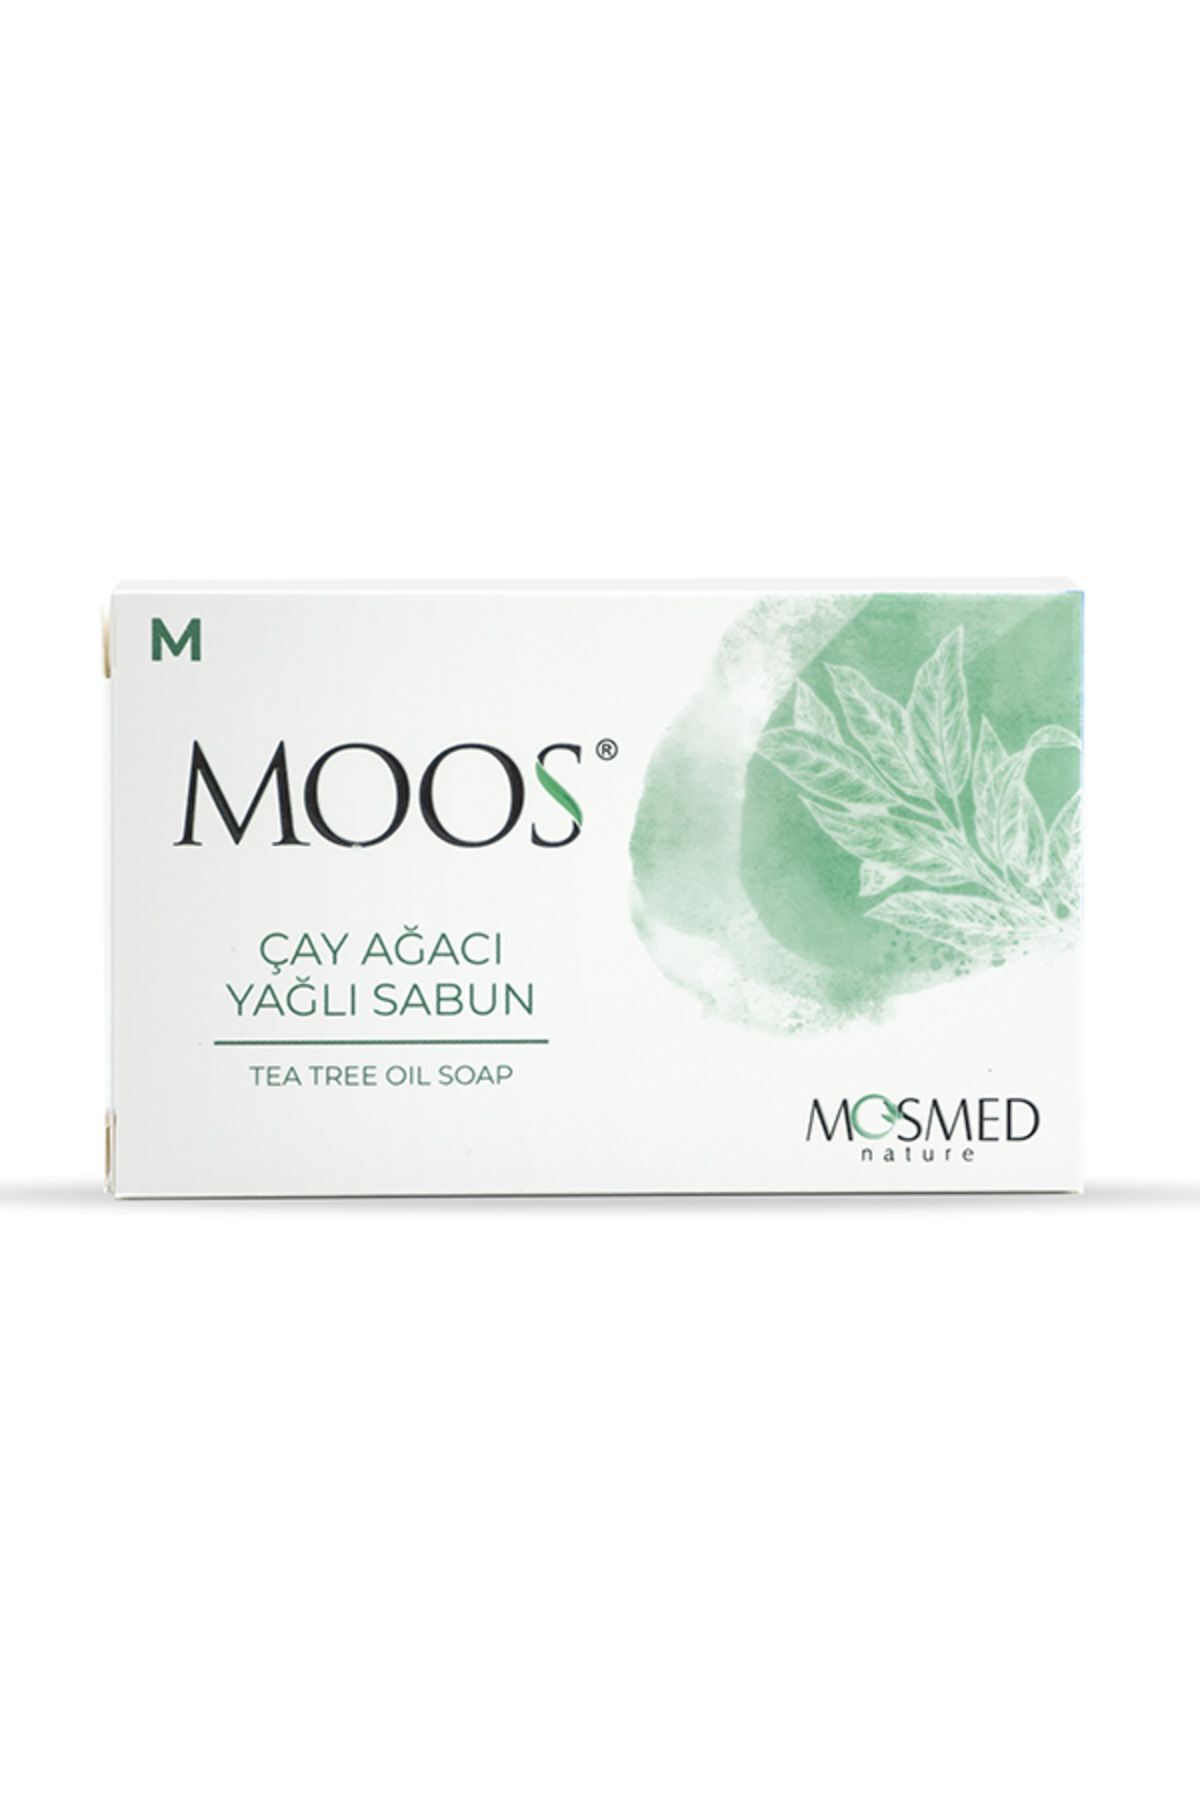 Moos M Çay Ağacı Yağlı Sabun 100 gr